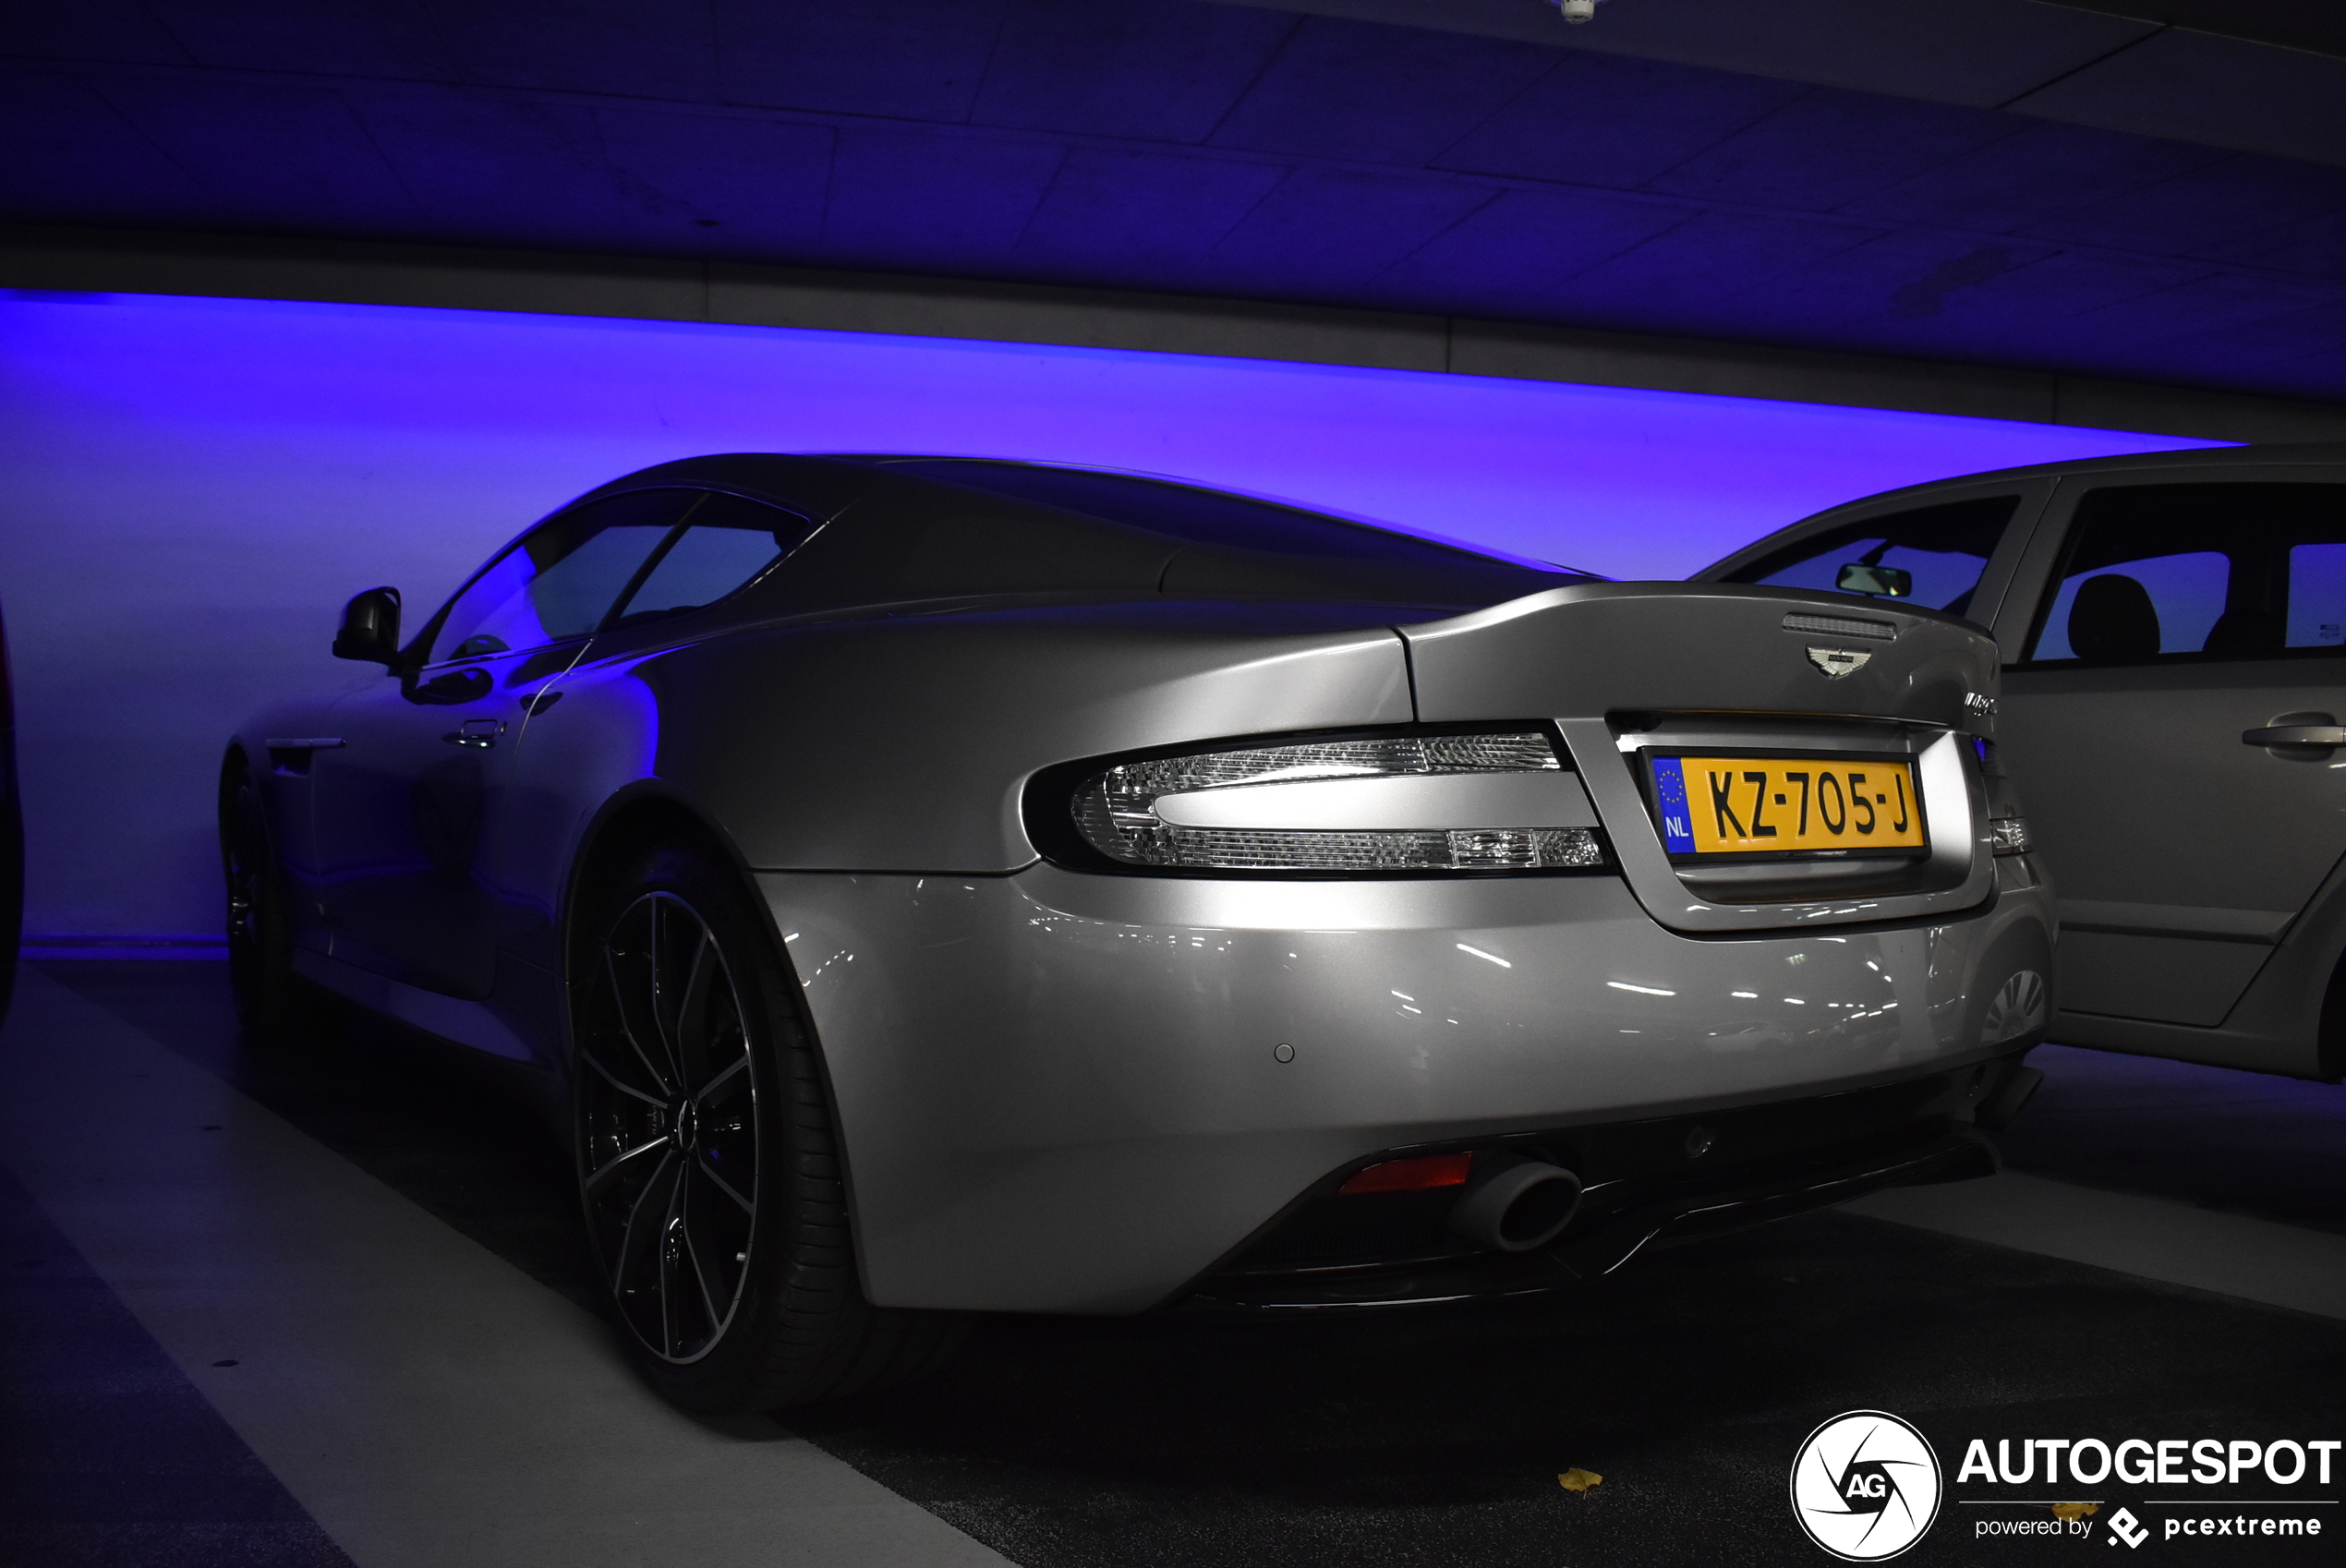 Aston Martin DB9 GT 2016 Bond Edition